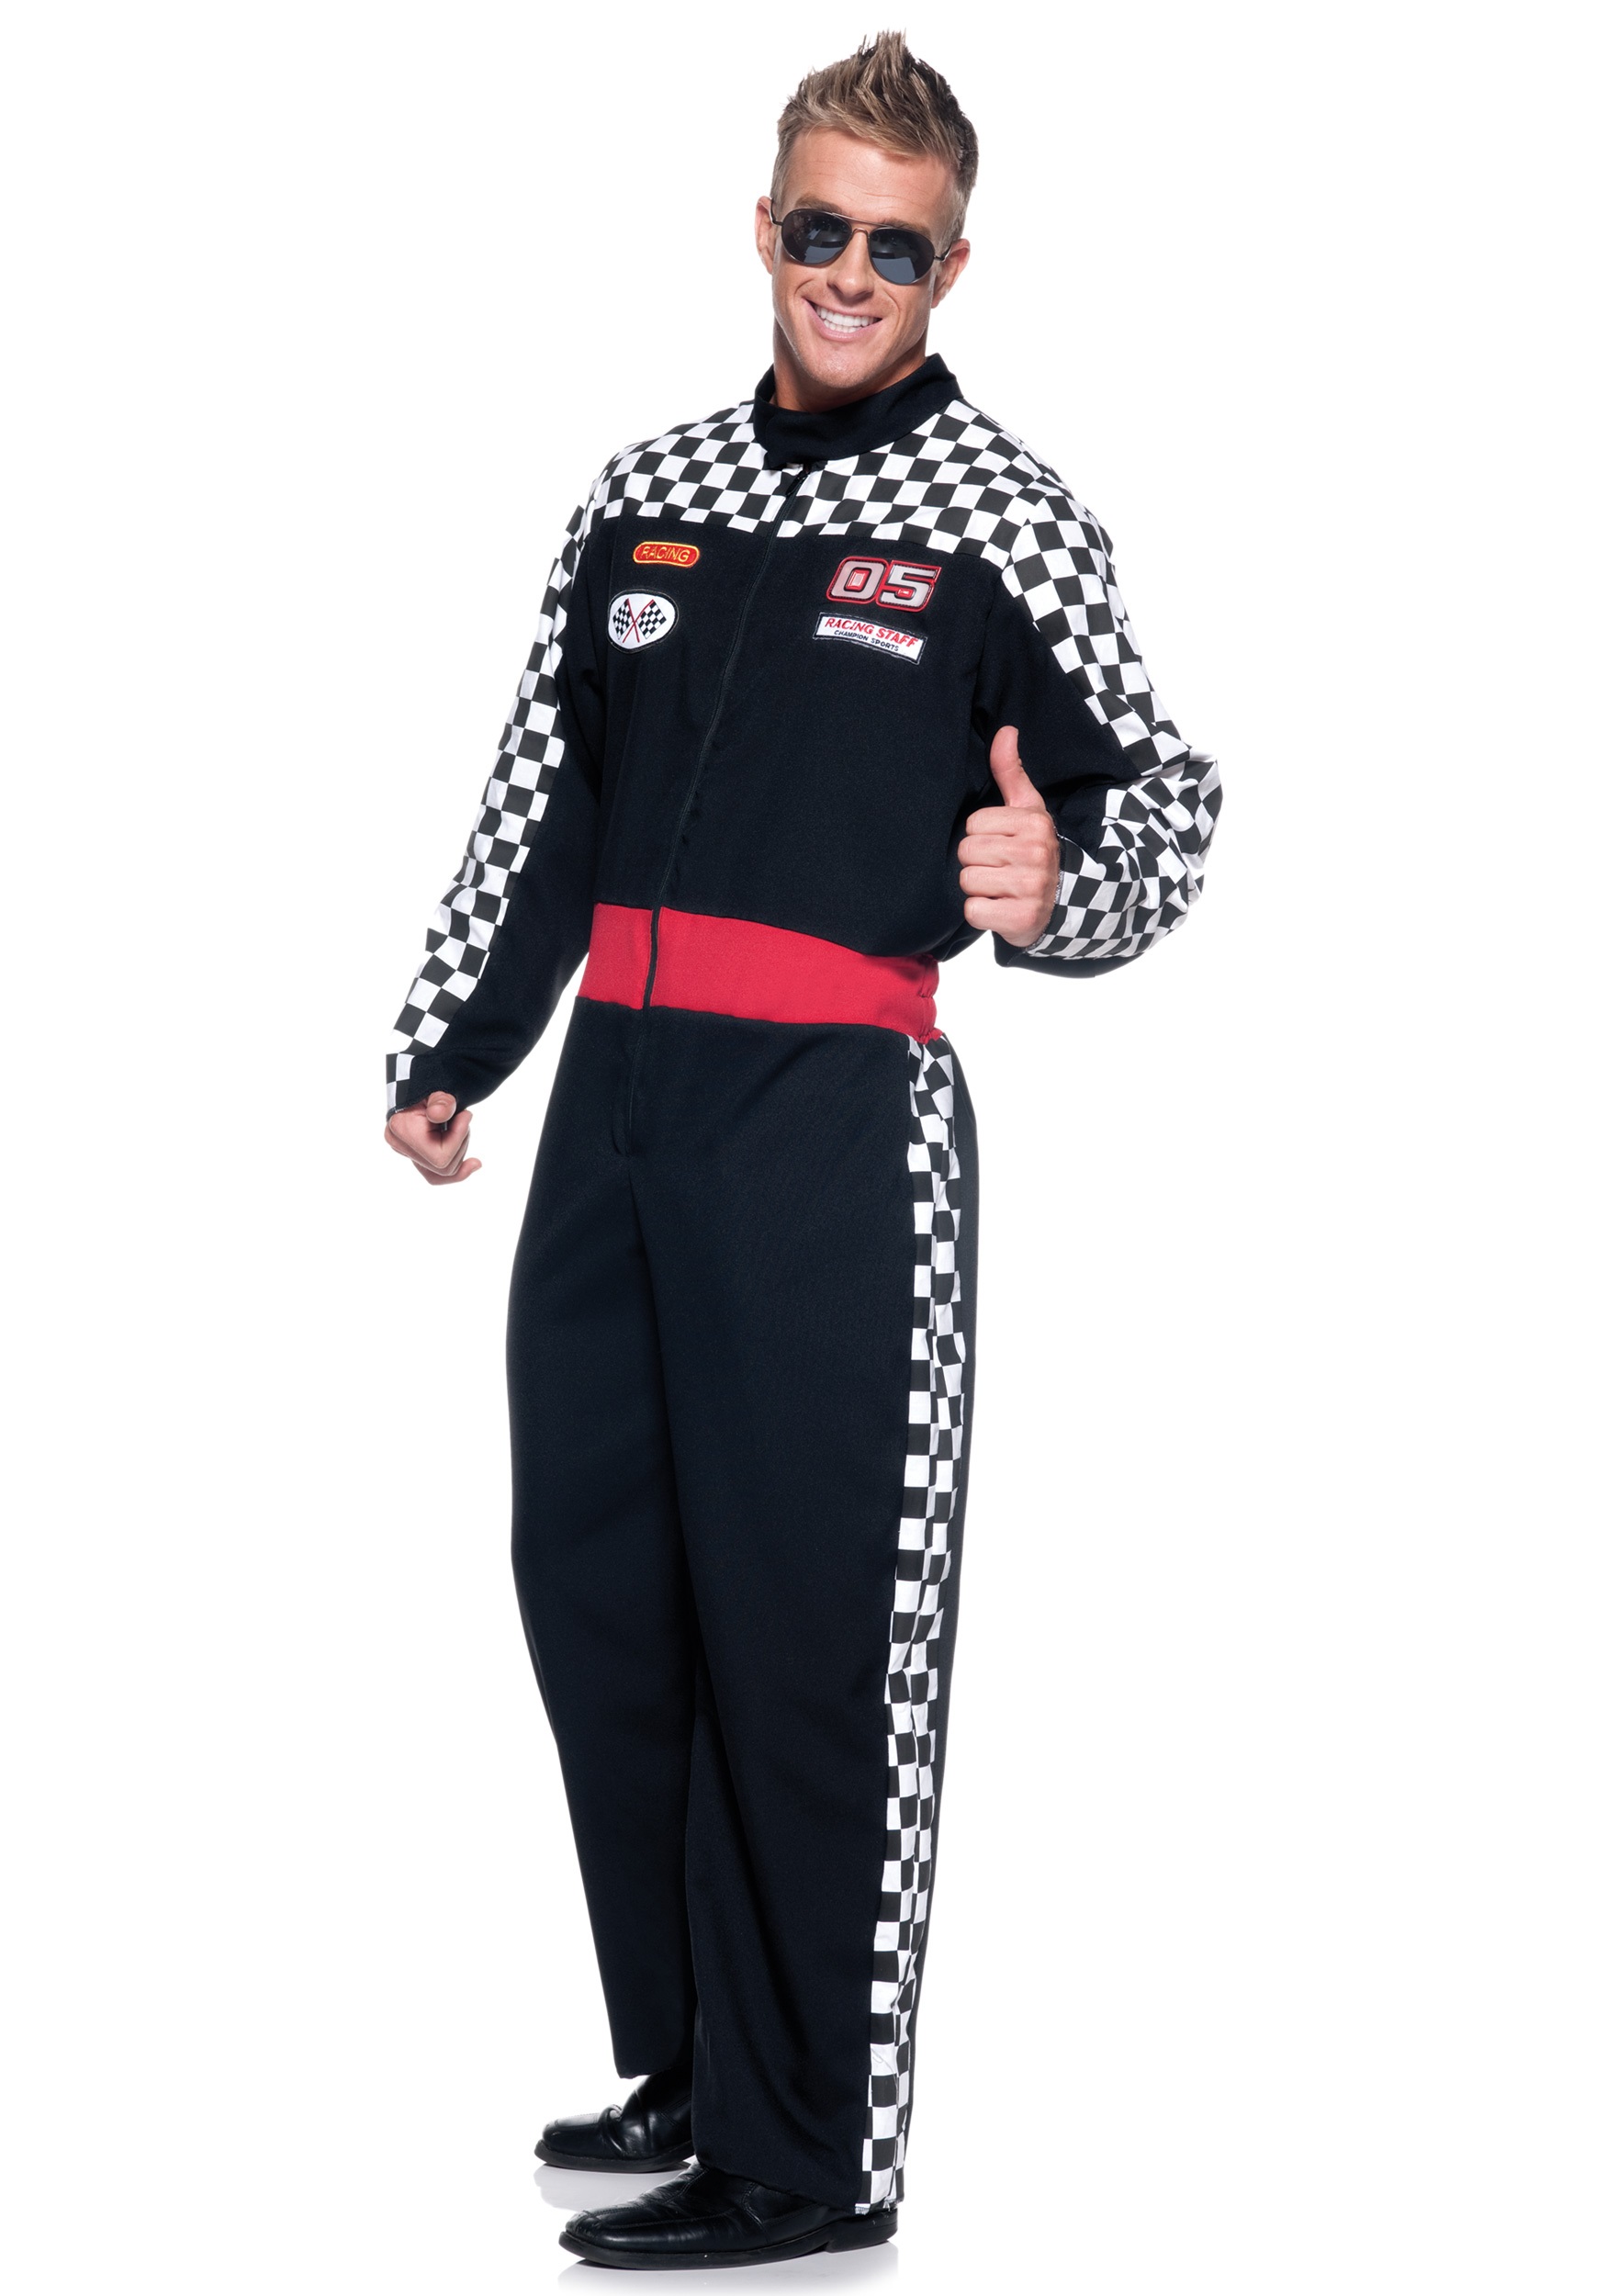 Men’s Plus Size Race Car Driver Costume